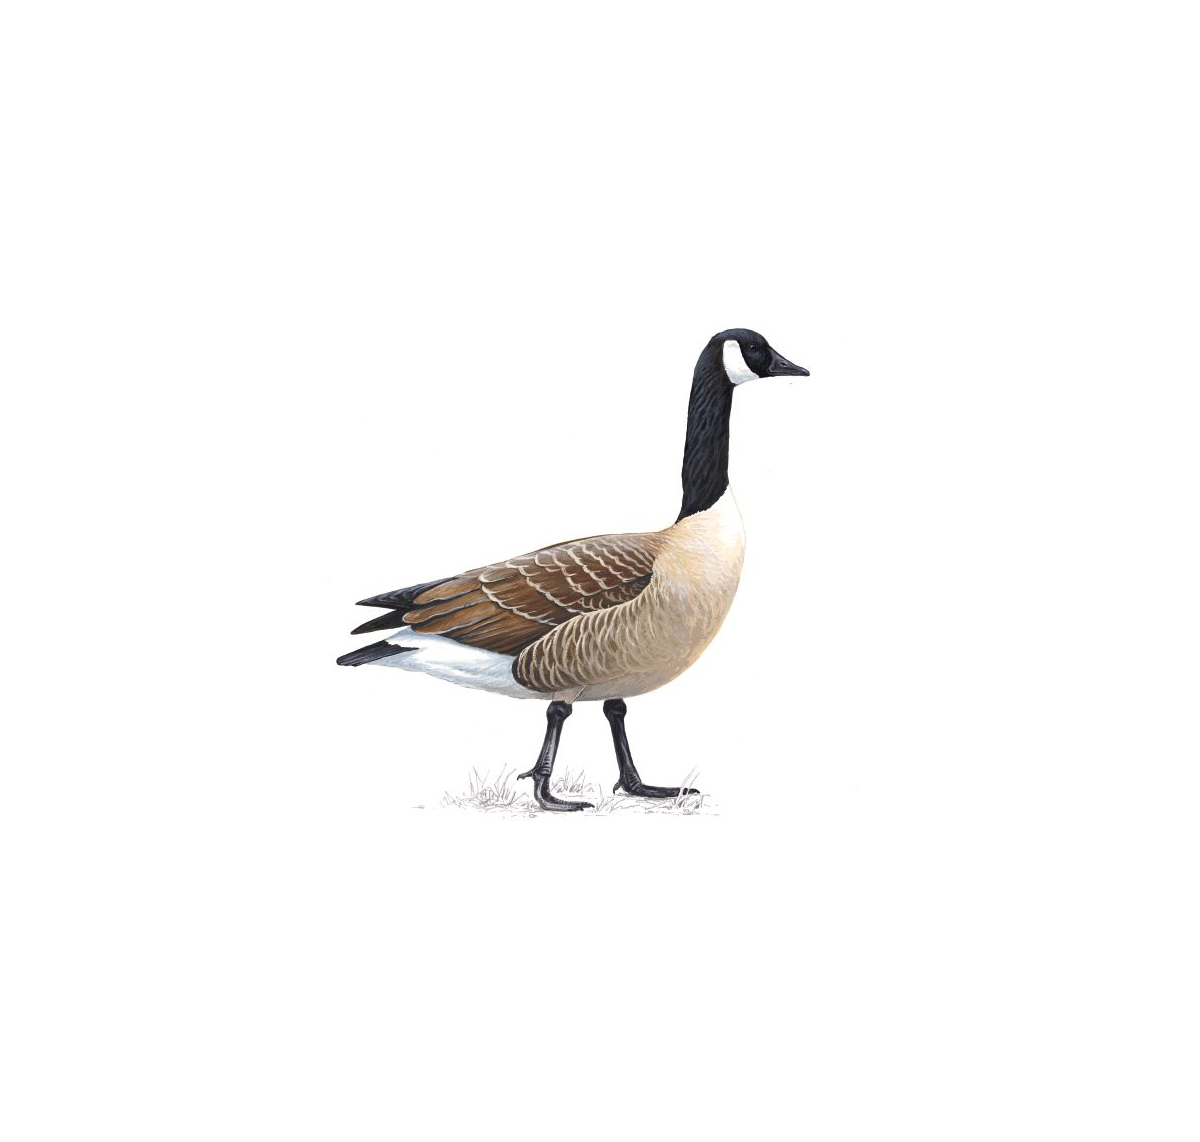 Pretty Canada goose